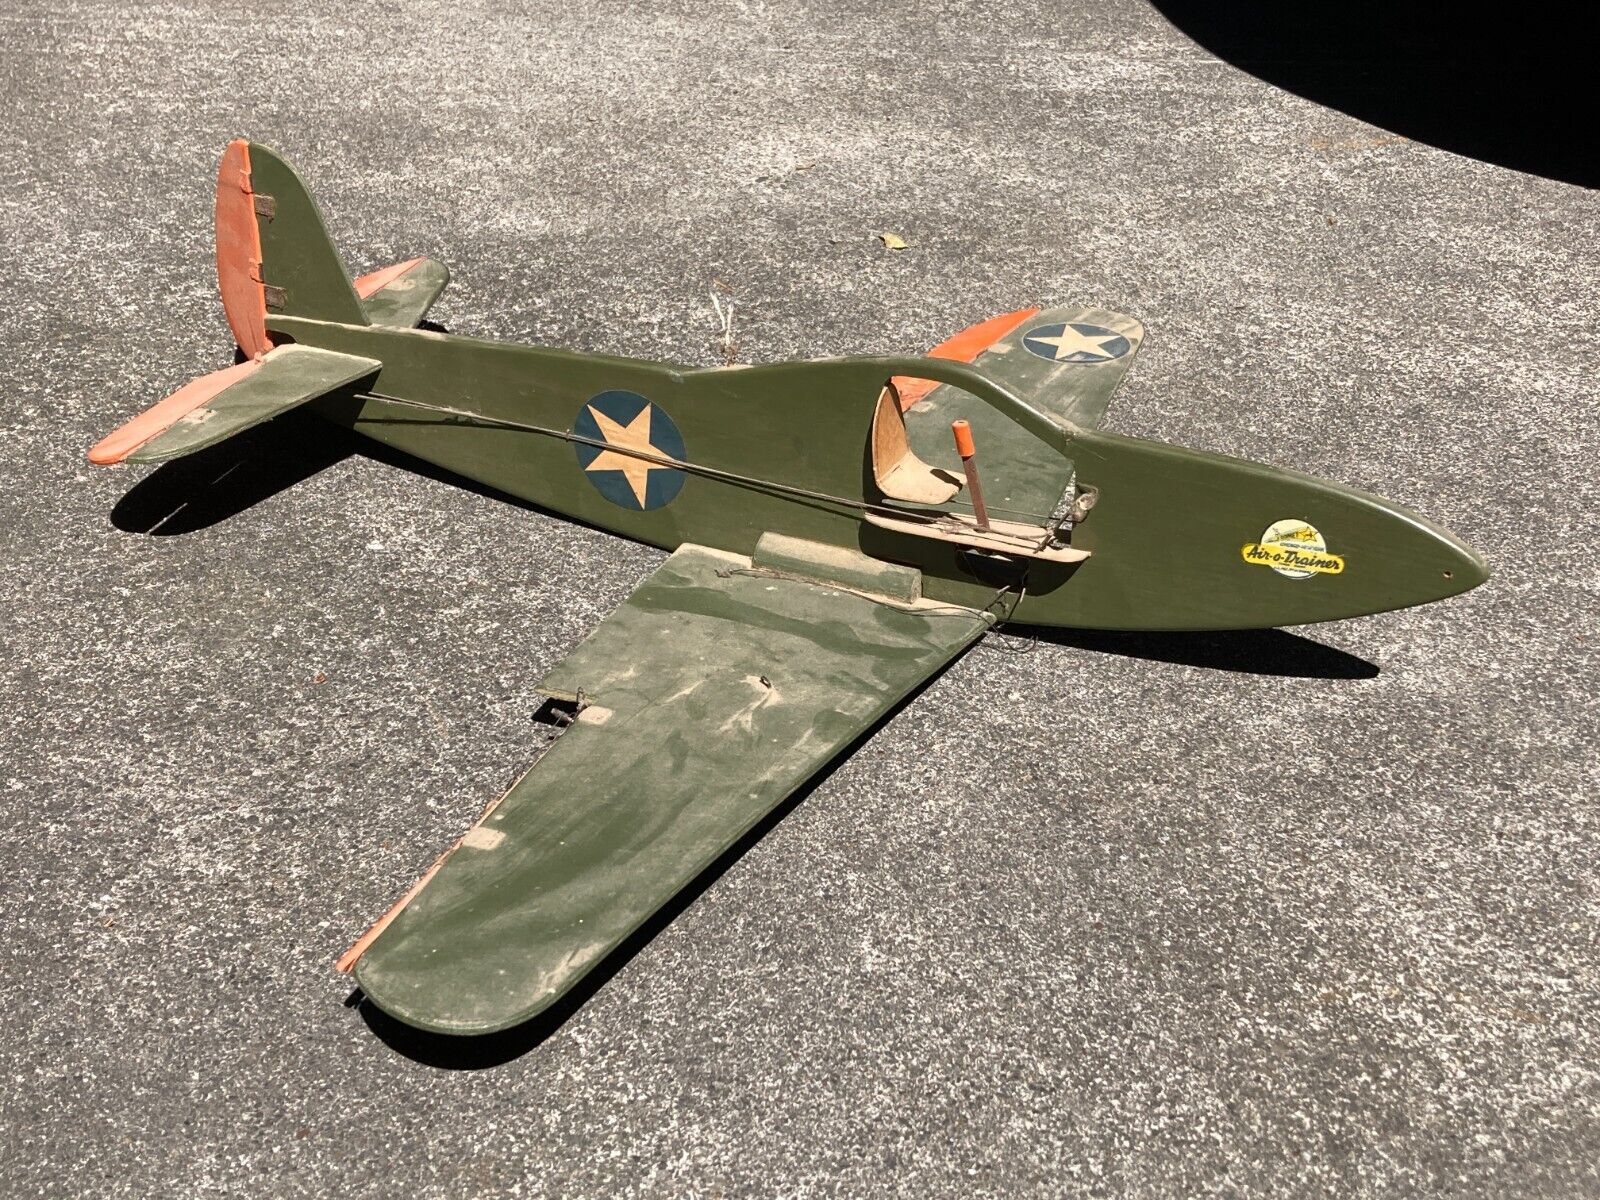 ORIGINAL USAAF COMET AIR-O-TRAINER WWII AIR CADET TRAINING MODEL